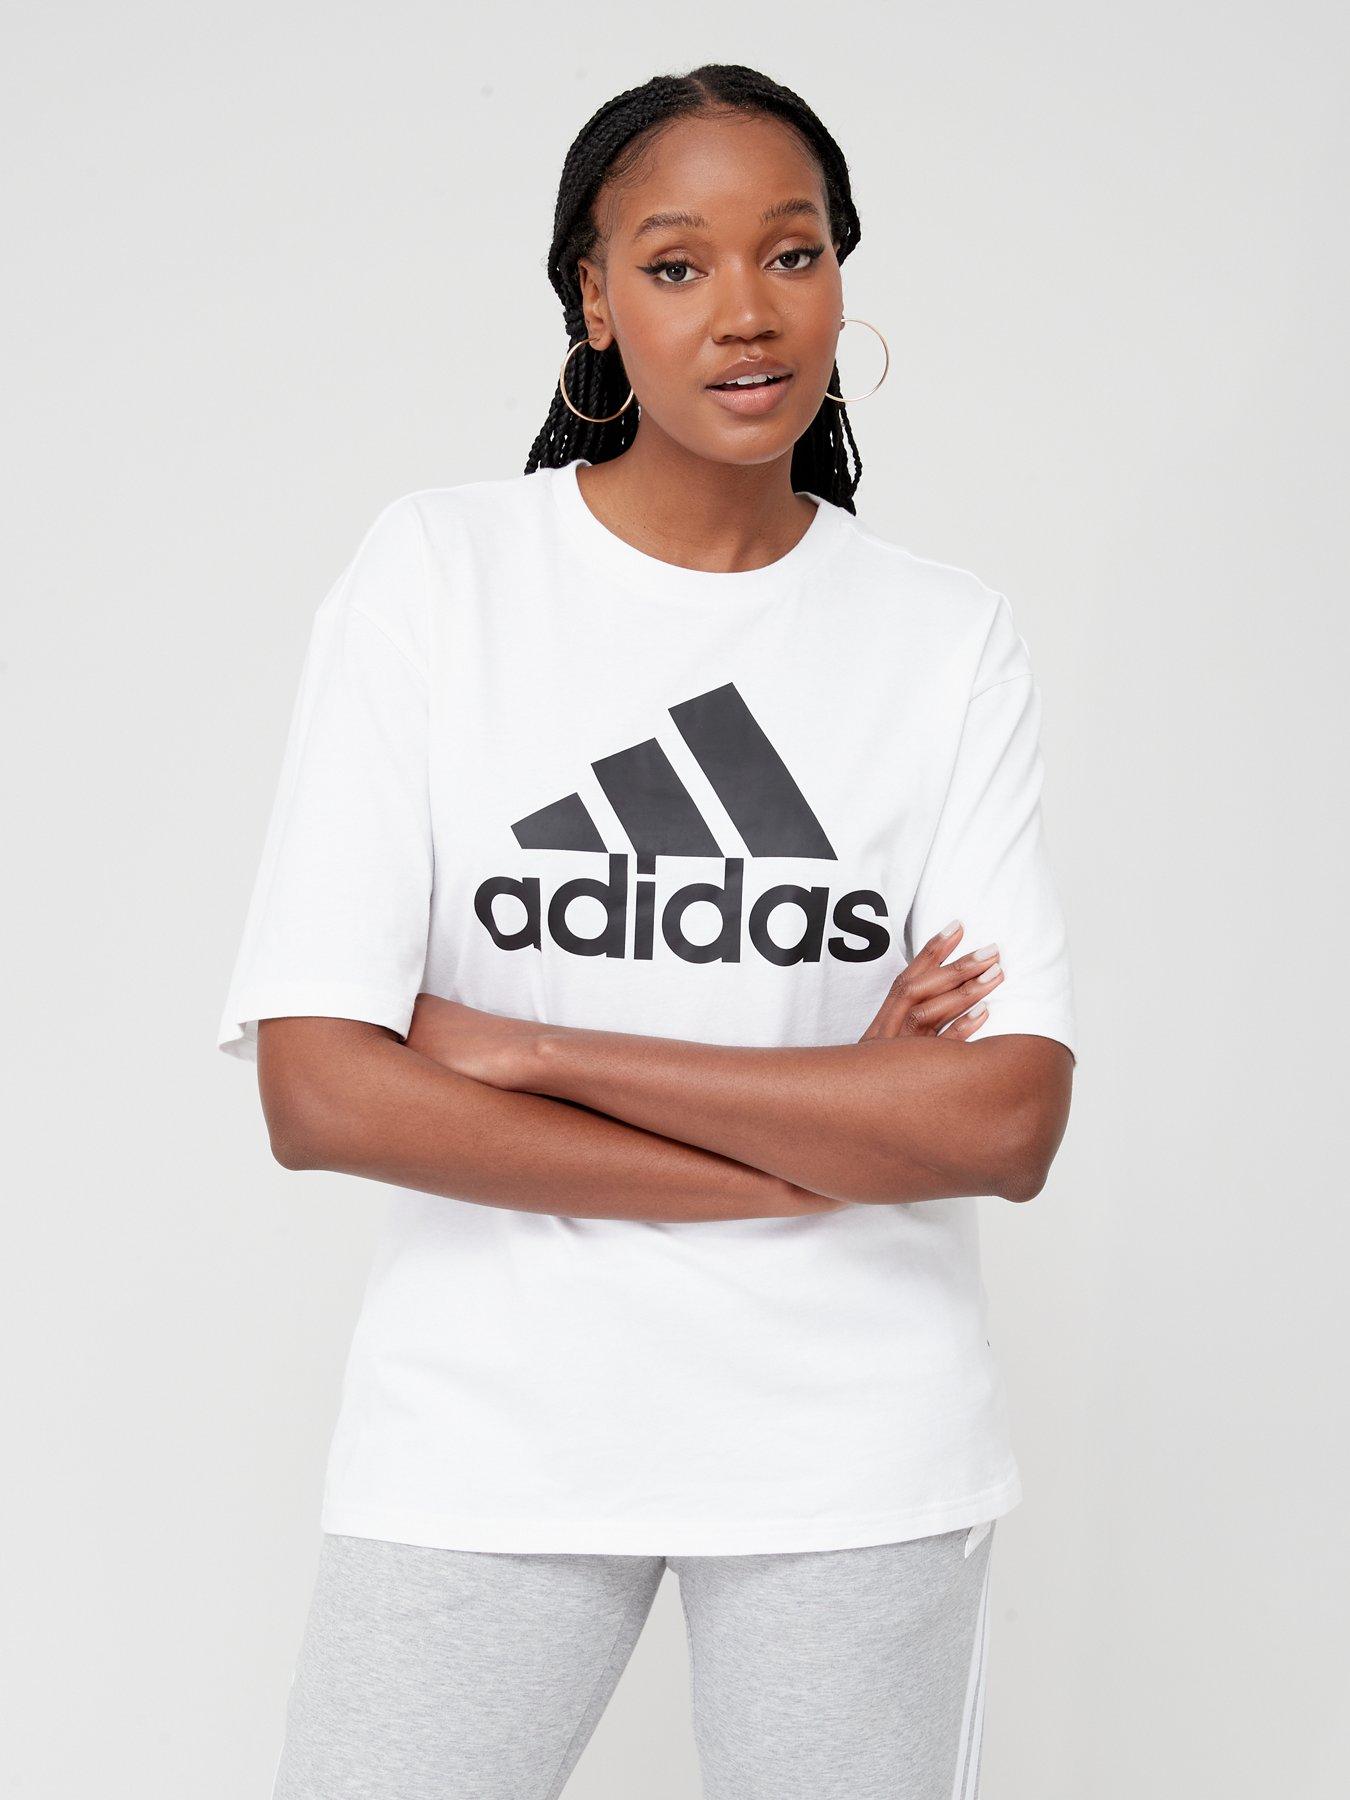 weigeren De gasten selecteer 5 | Adidas | Tops & t-shirts | Women | Very Ireland